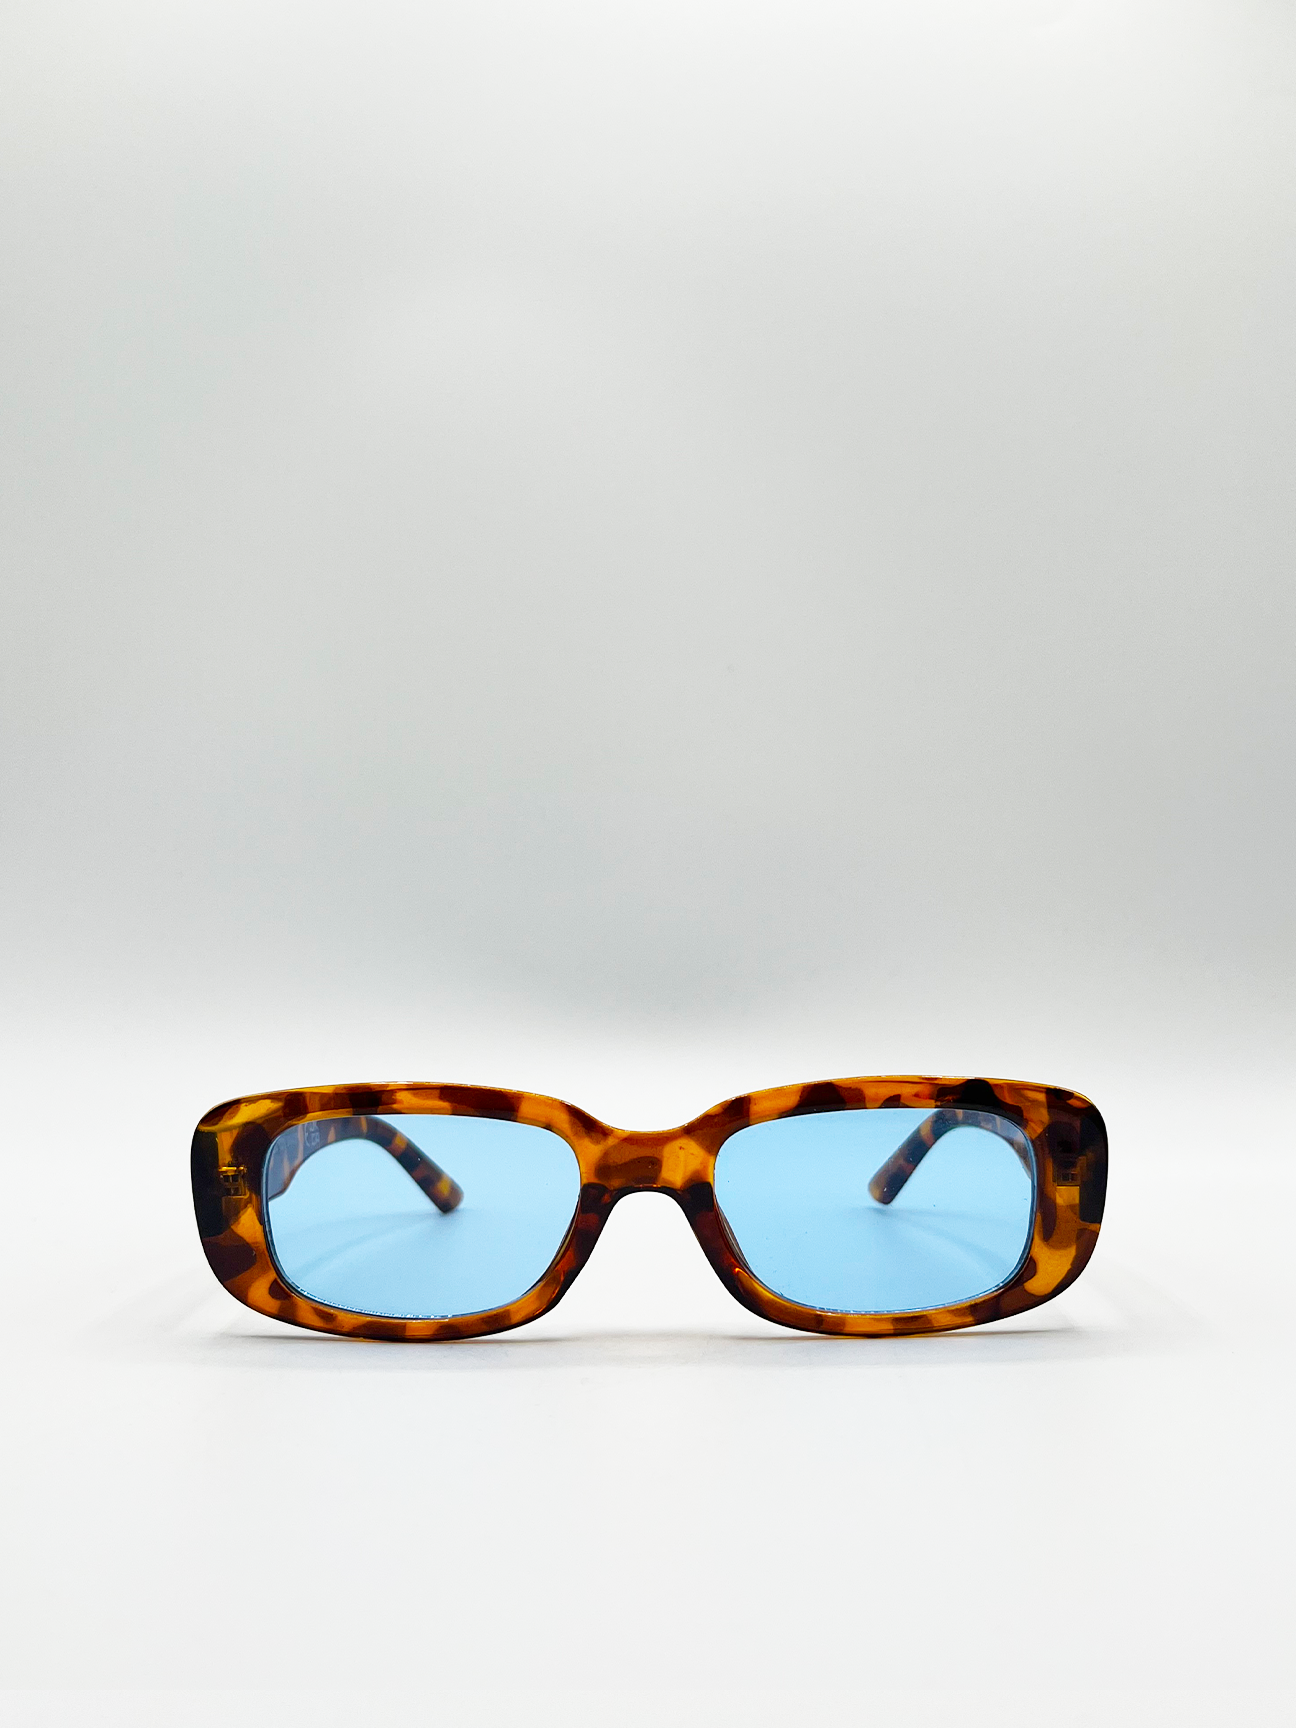 Tortoiseshell Rectangle Sunglasses with Blue Lenses